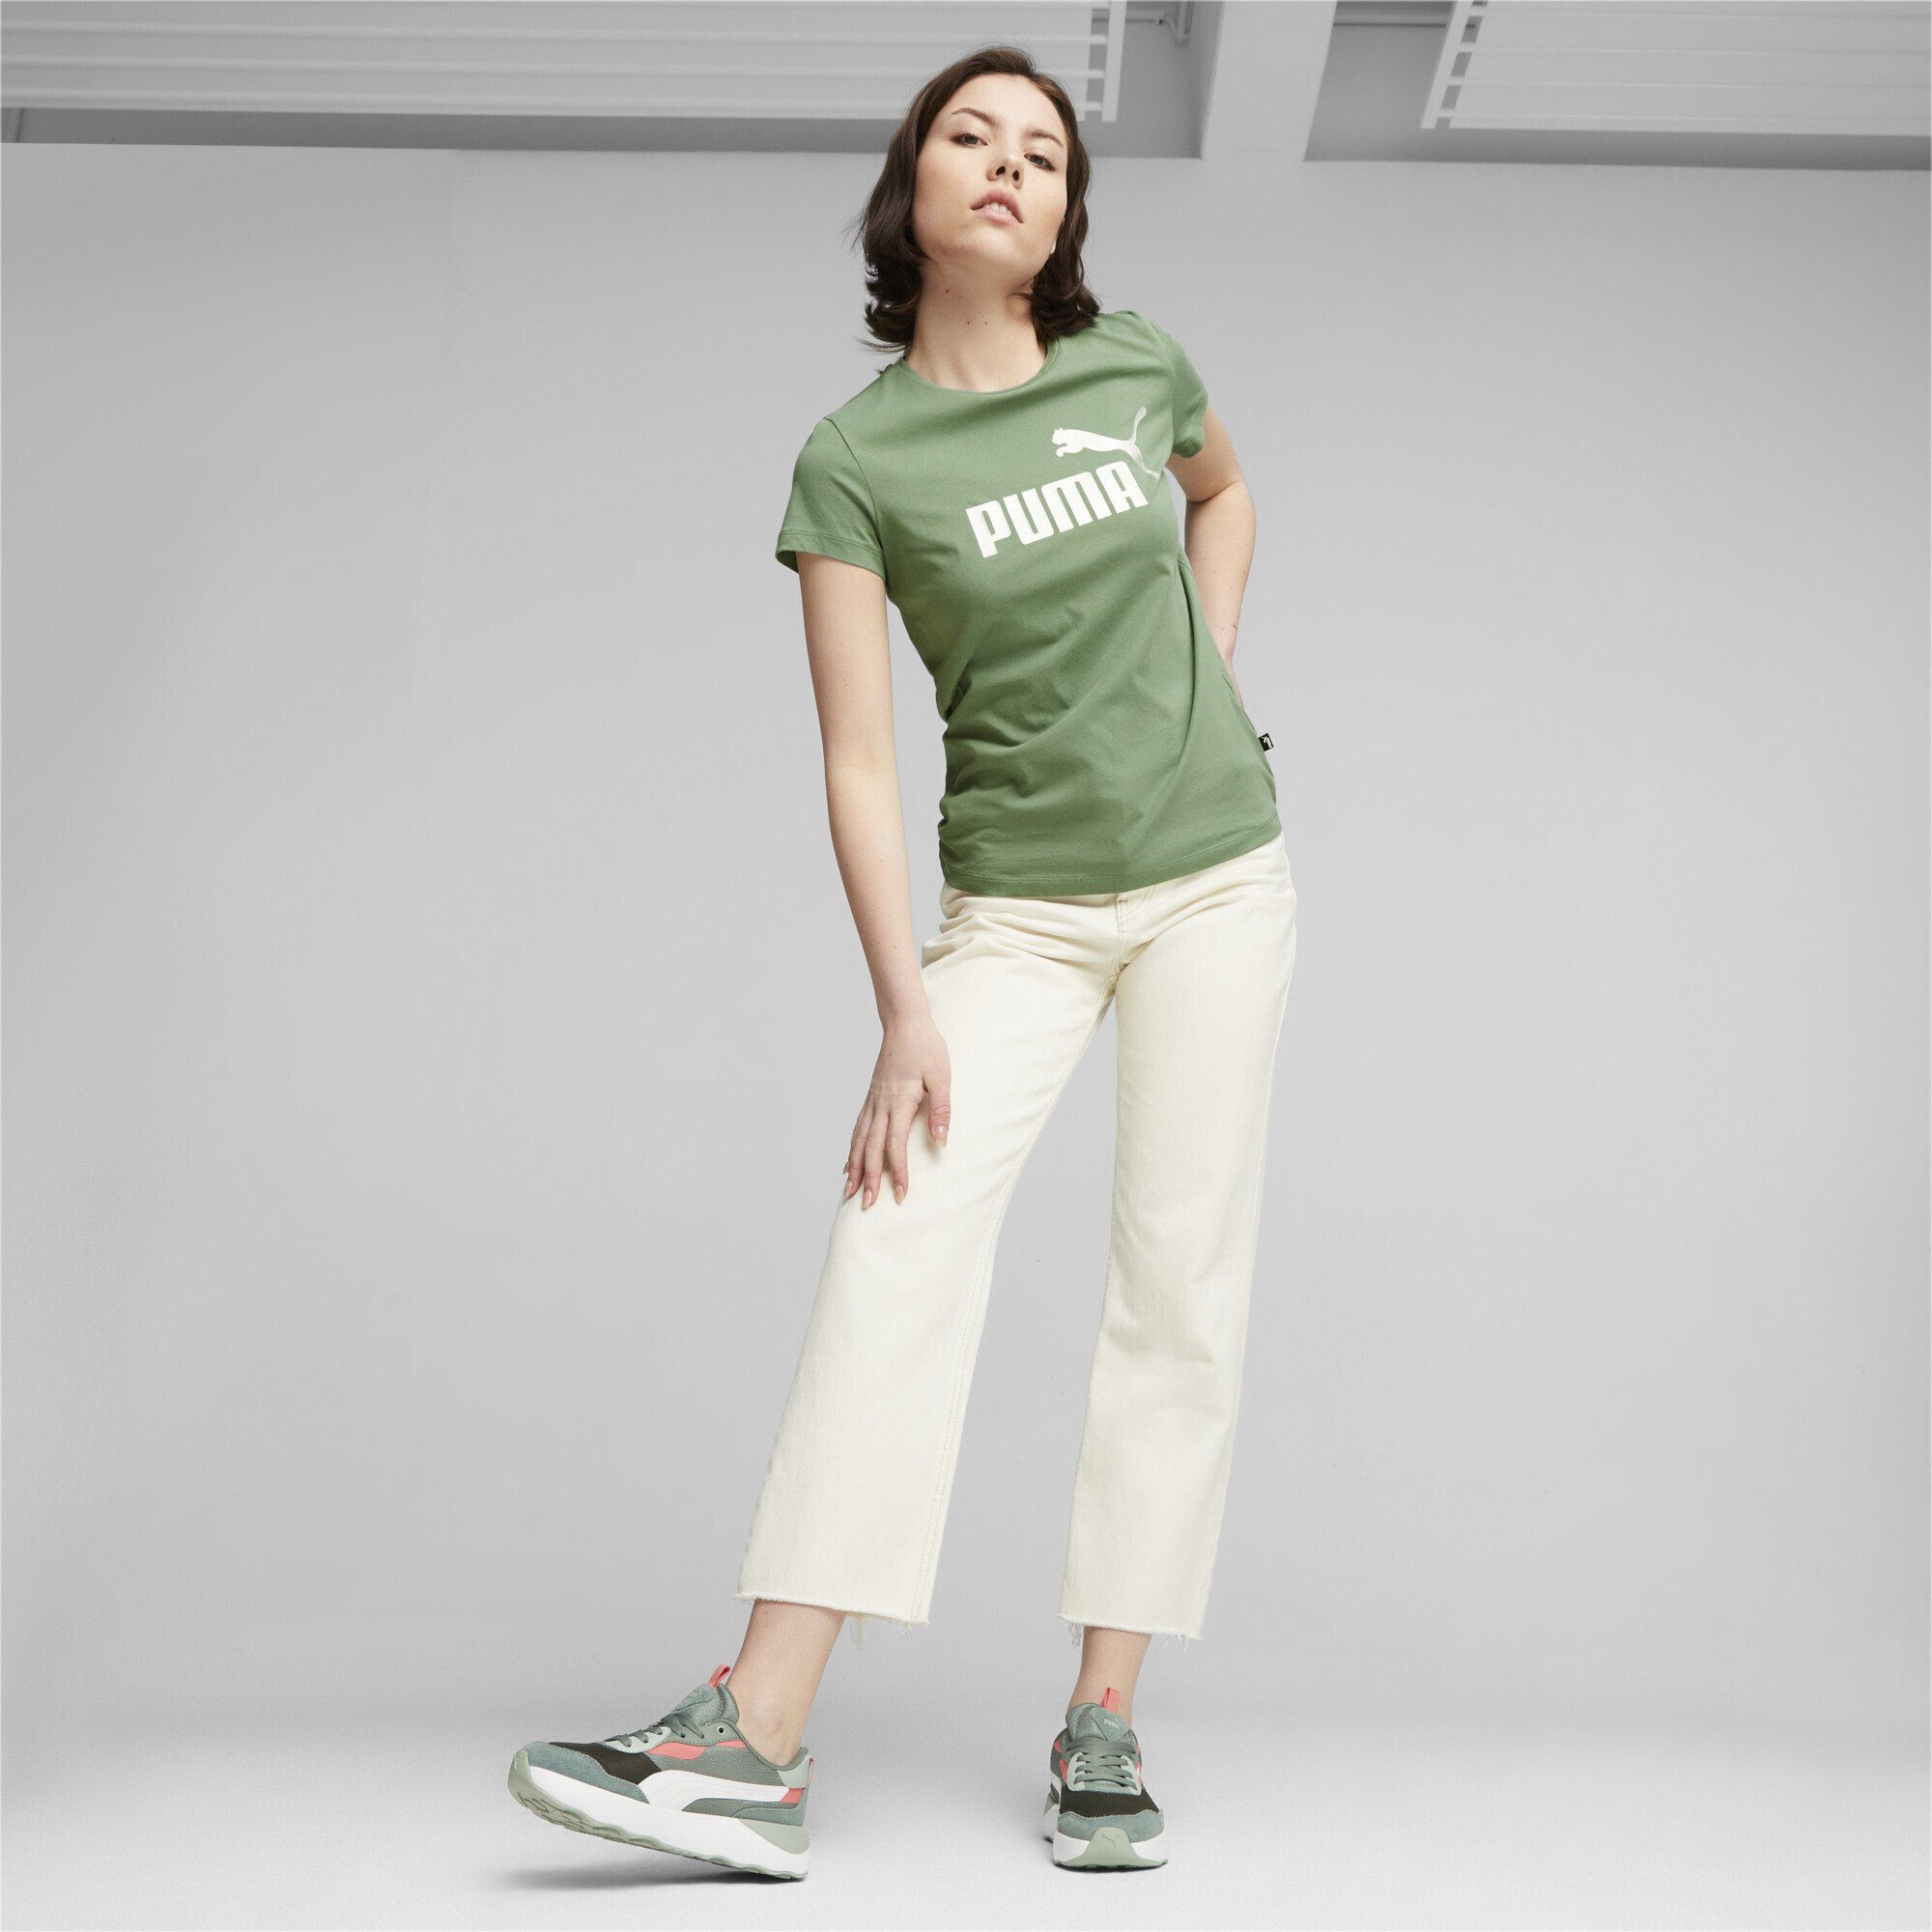 PUMA T-Shirt Damen Logo T-Shirt Metallic Eucalyptus Essentials+ Green